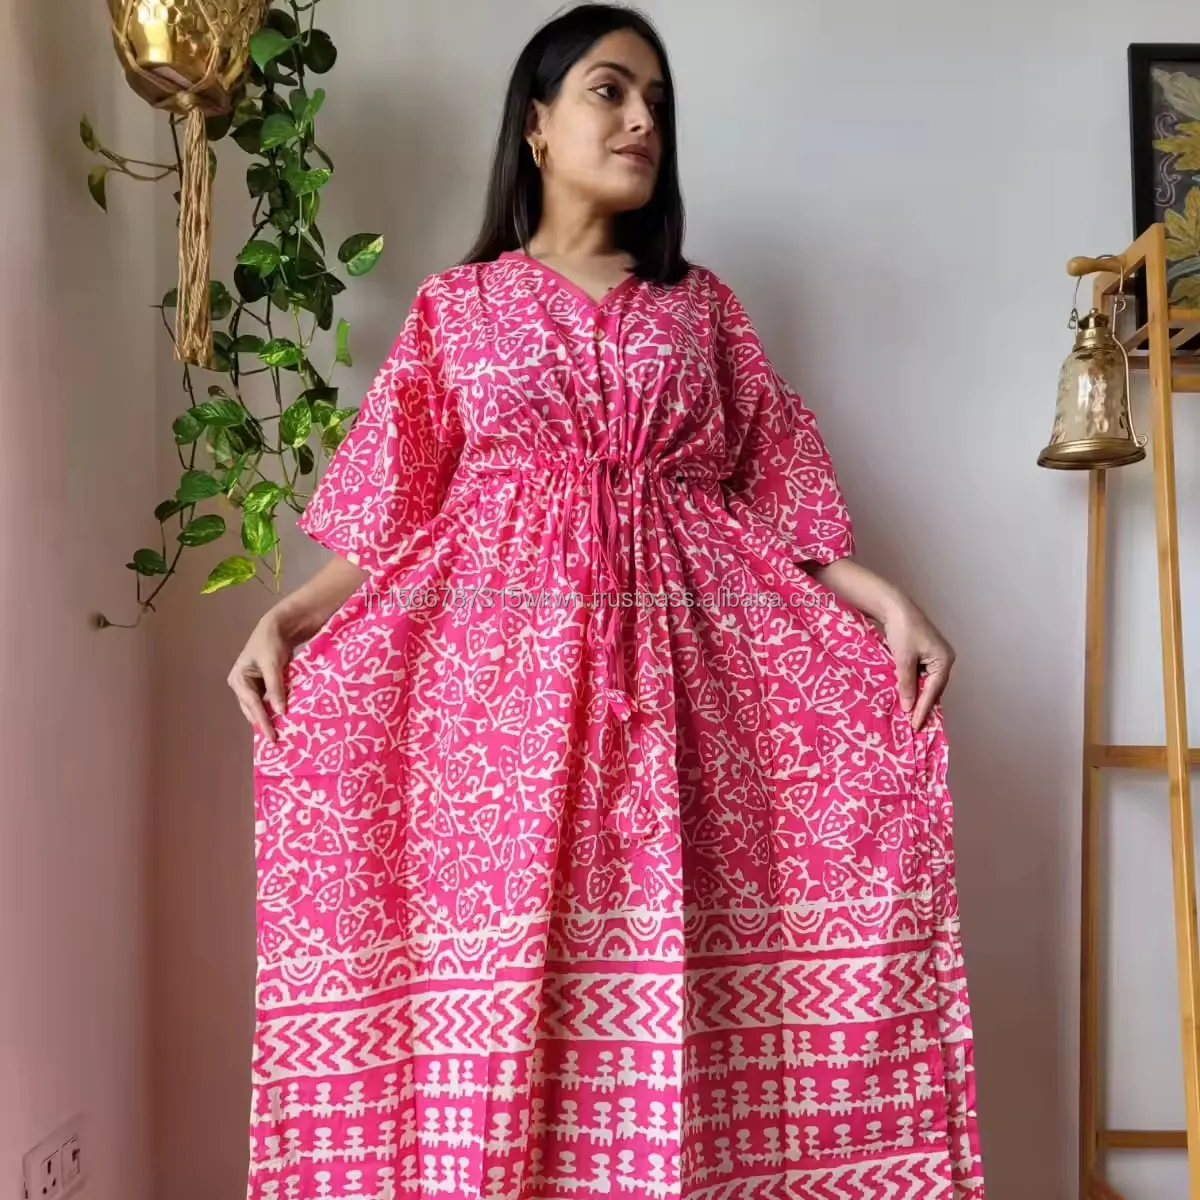 नया भारतीय थोक 100% सॉफ्ट हैंड ब्लॉक प्रिंटेड महिलाओं के लिए कफ्तान लंबी पोशाक ट्यूनिक टॉप लंबी मैक्सी ड्रेस गाउन शाम के पहनने वाली पोशाक